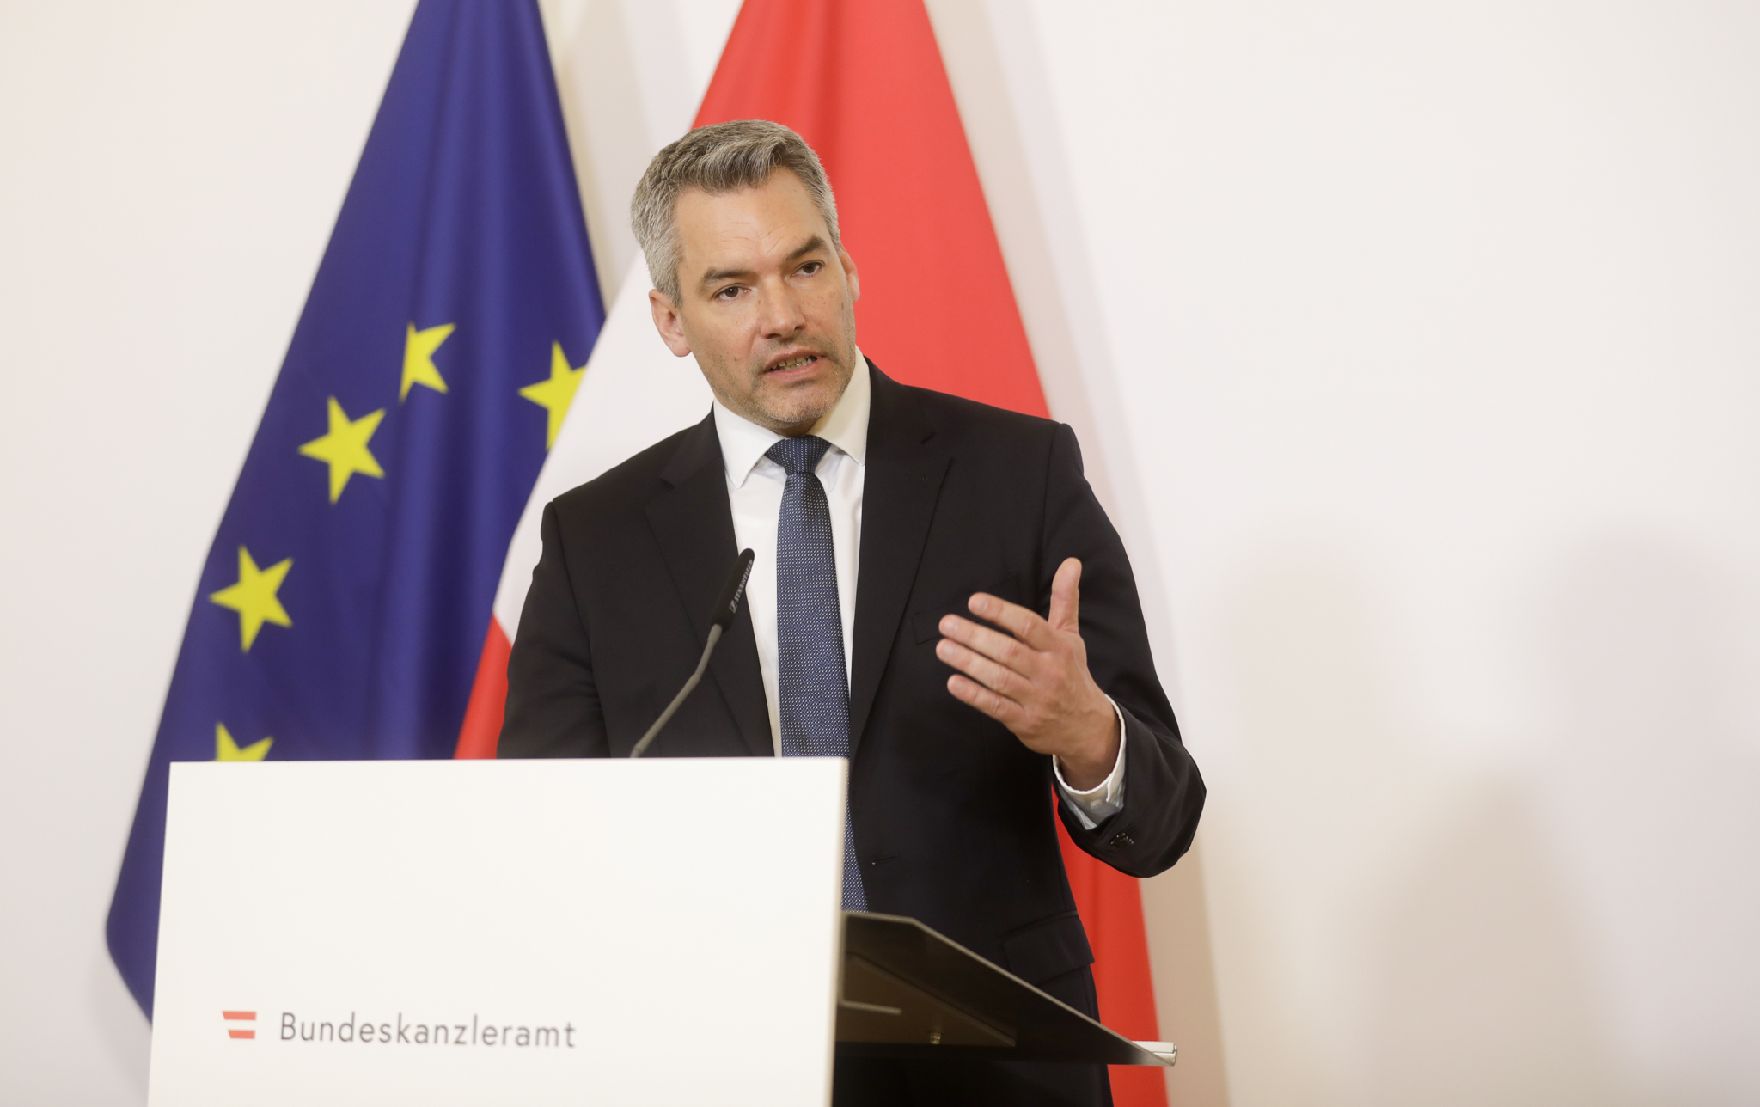 Am 19. März 2020 fand ein Pressestatement zu den Maßnahmen gegen die Krise im Bundeskanzleramt statt. Im Bild Innenminister Karl Nehammer.